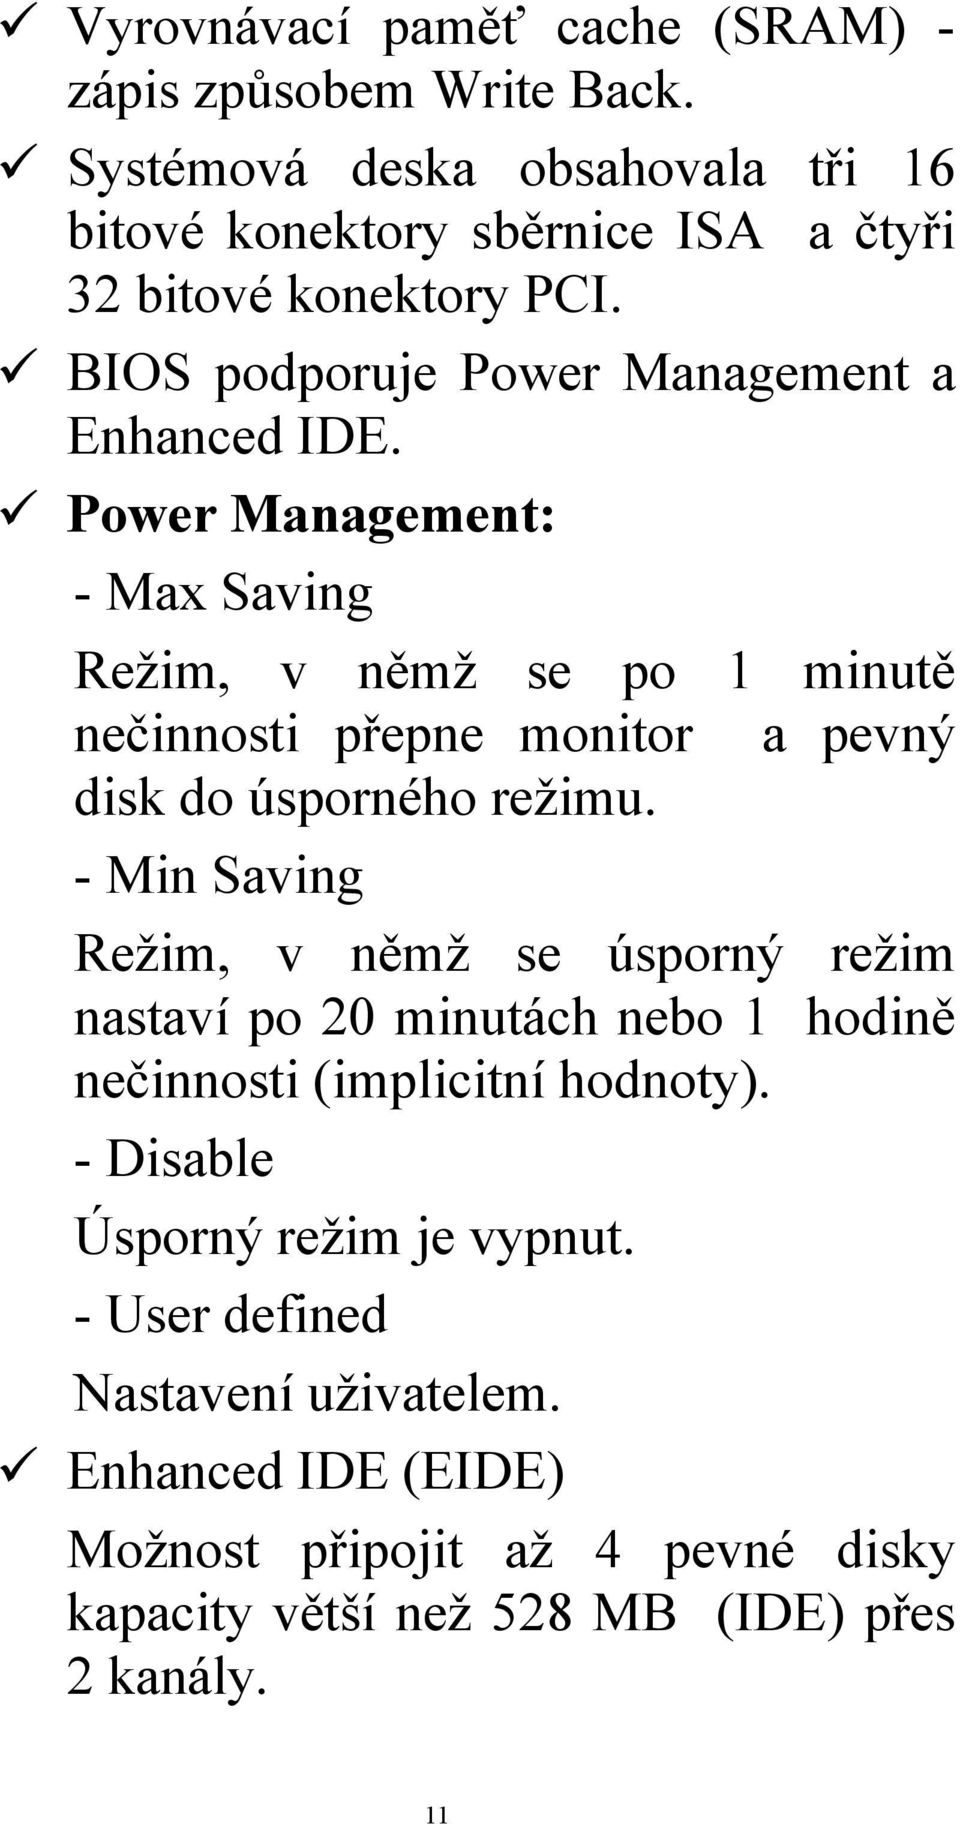 Power Management: - Max Saving Režim, v němž se po 1 minutě nečinnosti přepne monitor a pevný disk do úsporného režimu.